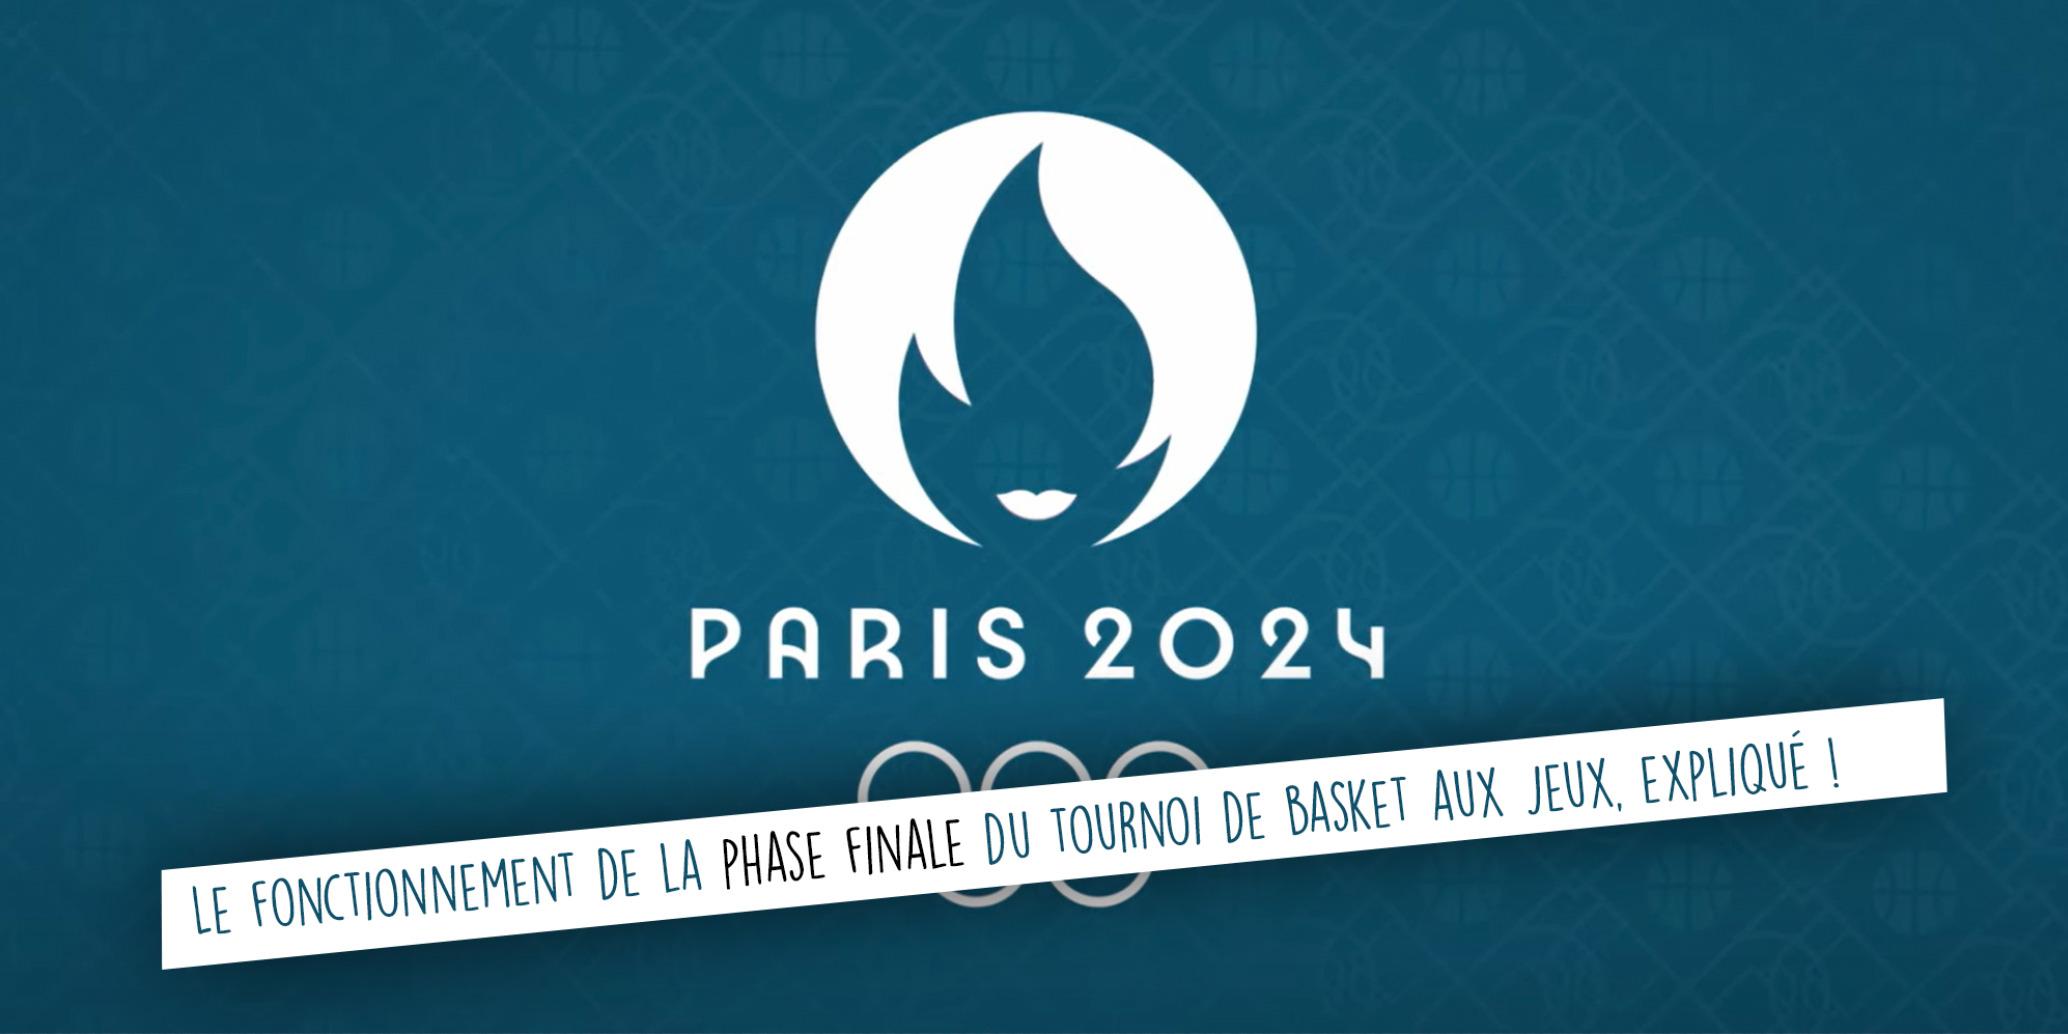 Jeux Olympiques de Paris 2024 phase finale tuto